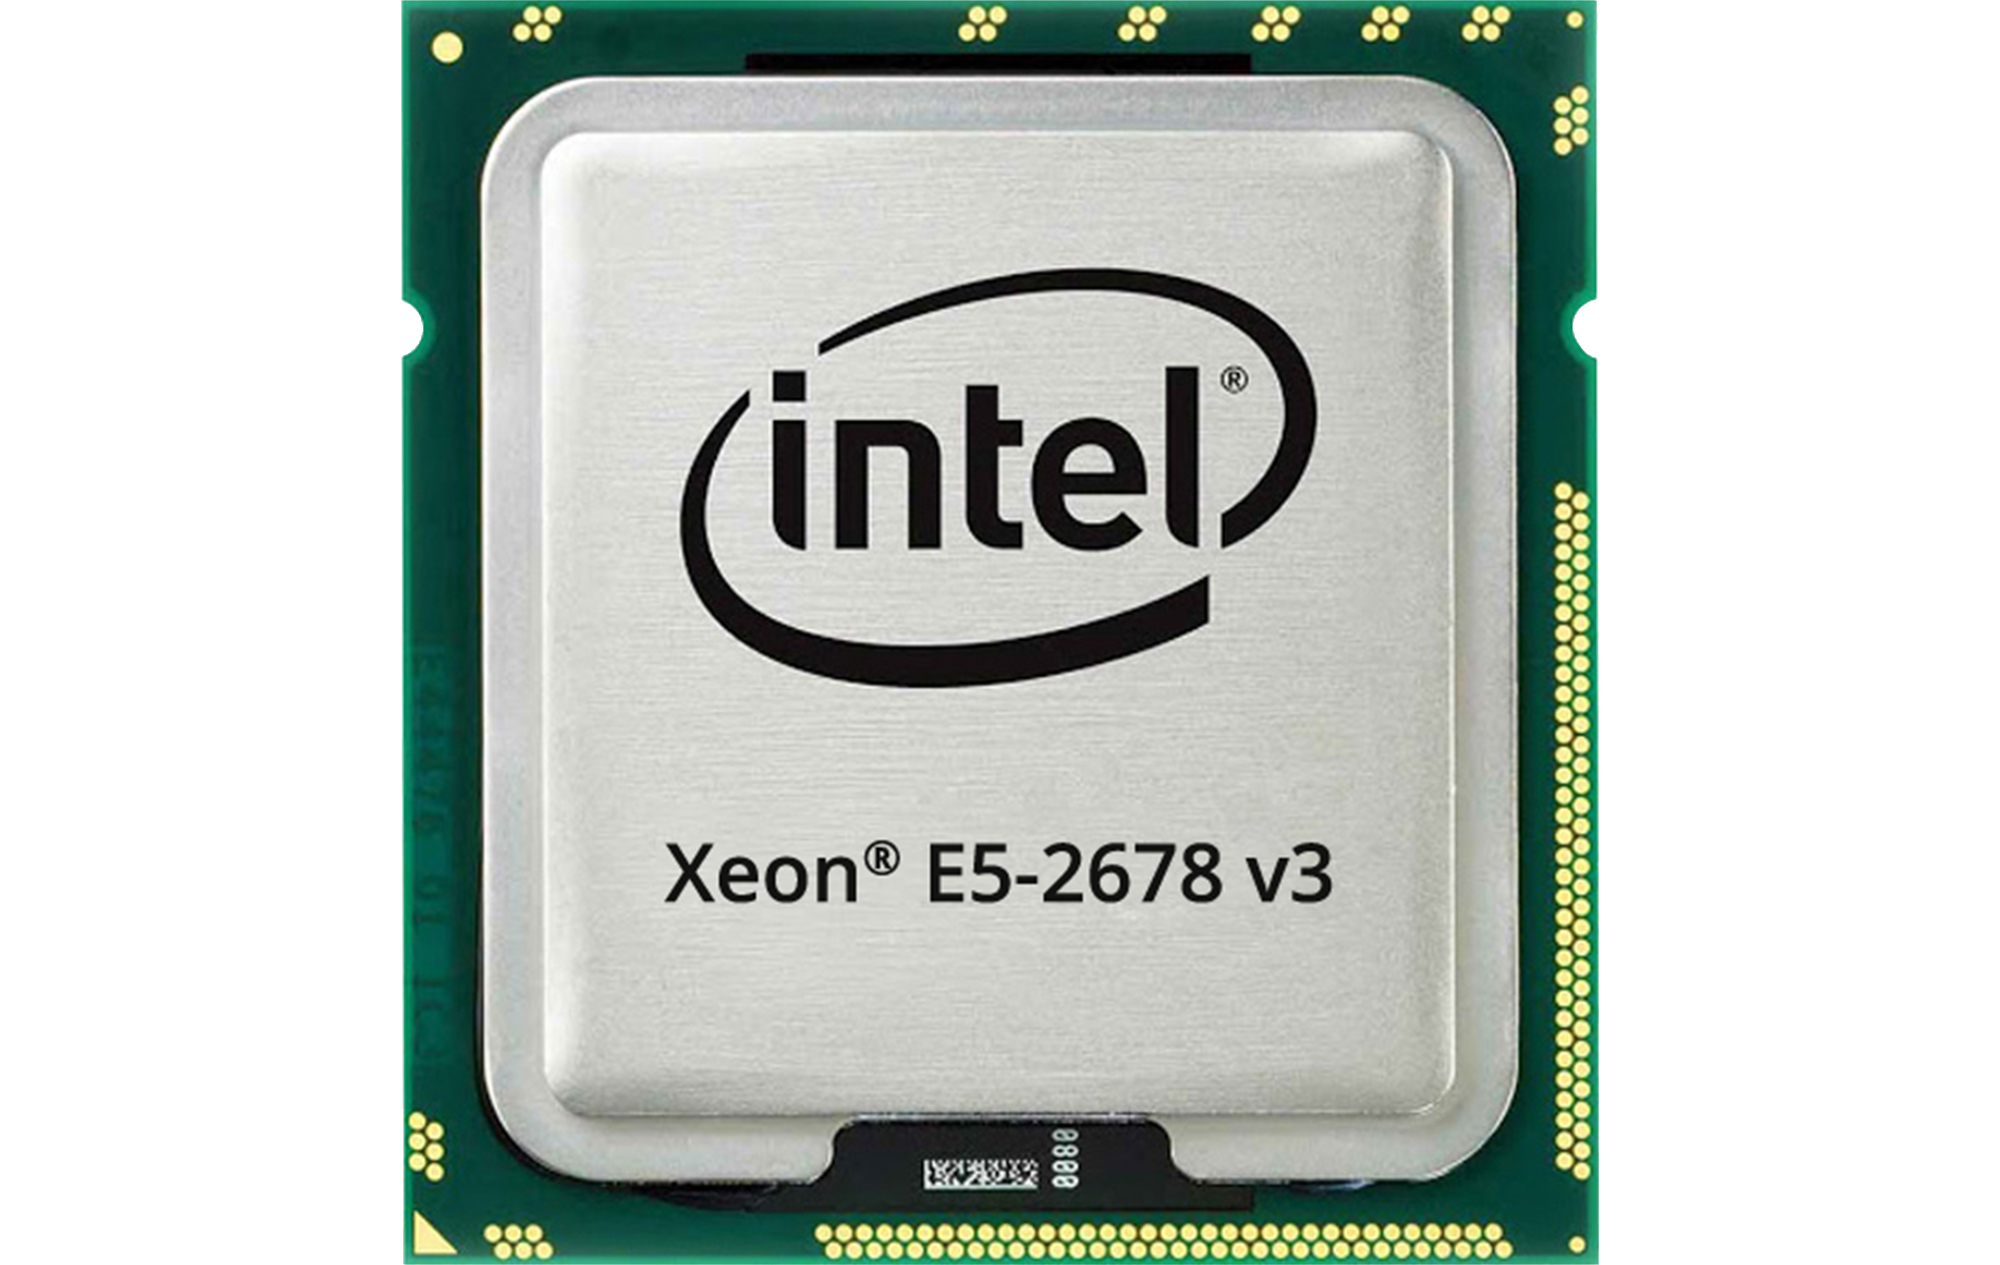 CPU Intel Xeon Processor E5-2678 v3 (2.5GHz Turbo Up To 3.3GHz, 12 nhân 24 luồng, 30MB Cache, LGA 2011-3) tăng hiệu quả làm việc 